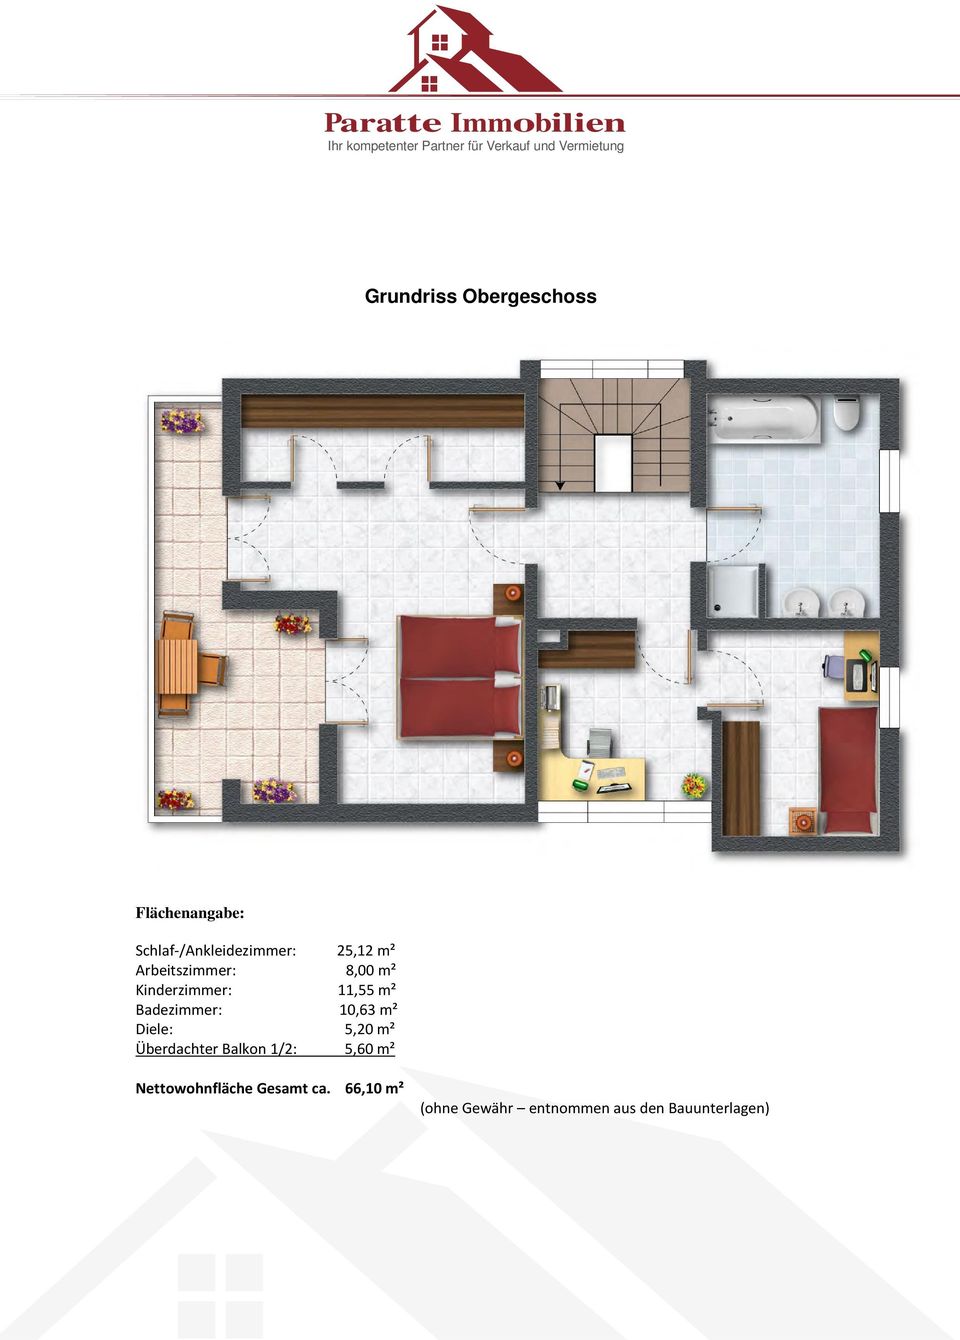 10,63 m² Diele: 5,20 m² Überdachter Balkon 1/2: 5,60 m²